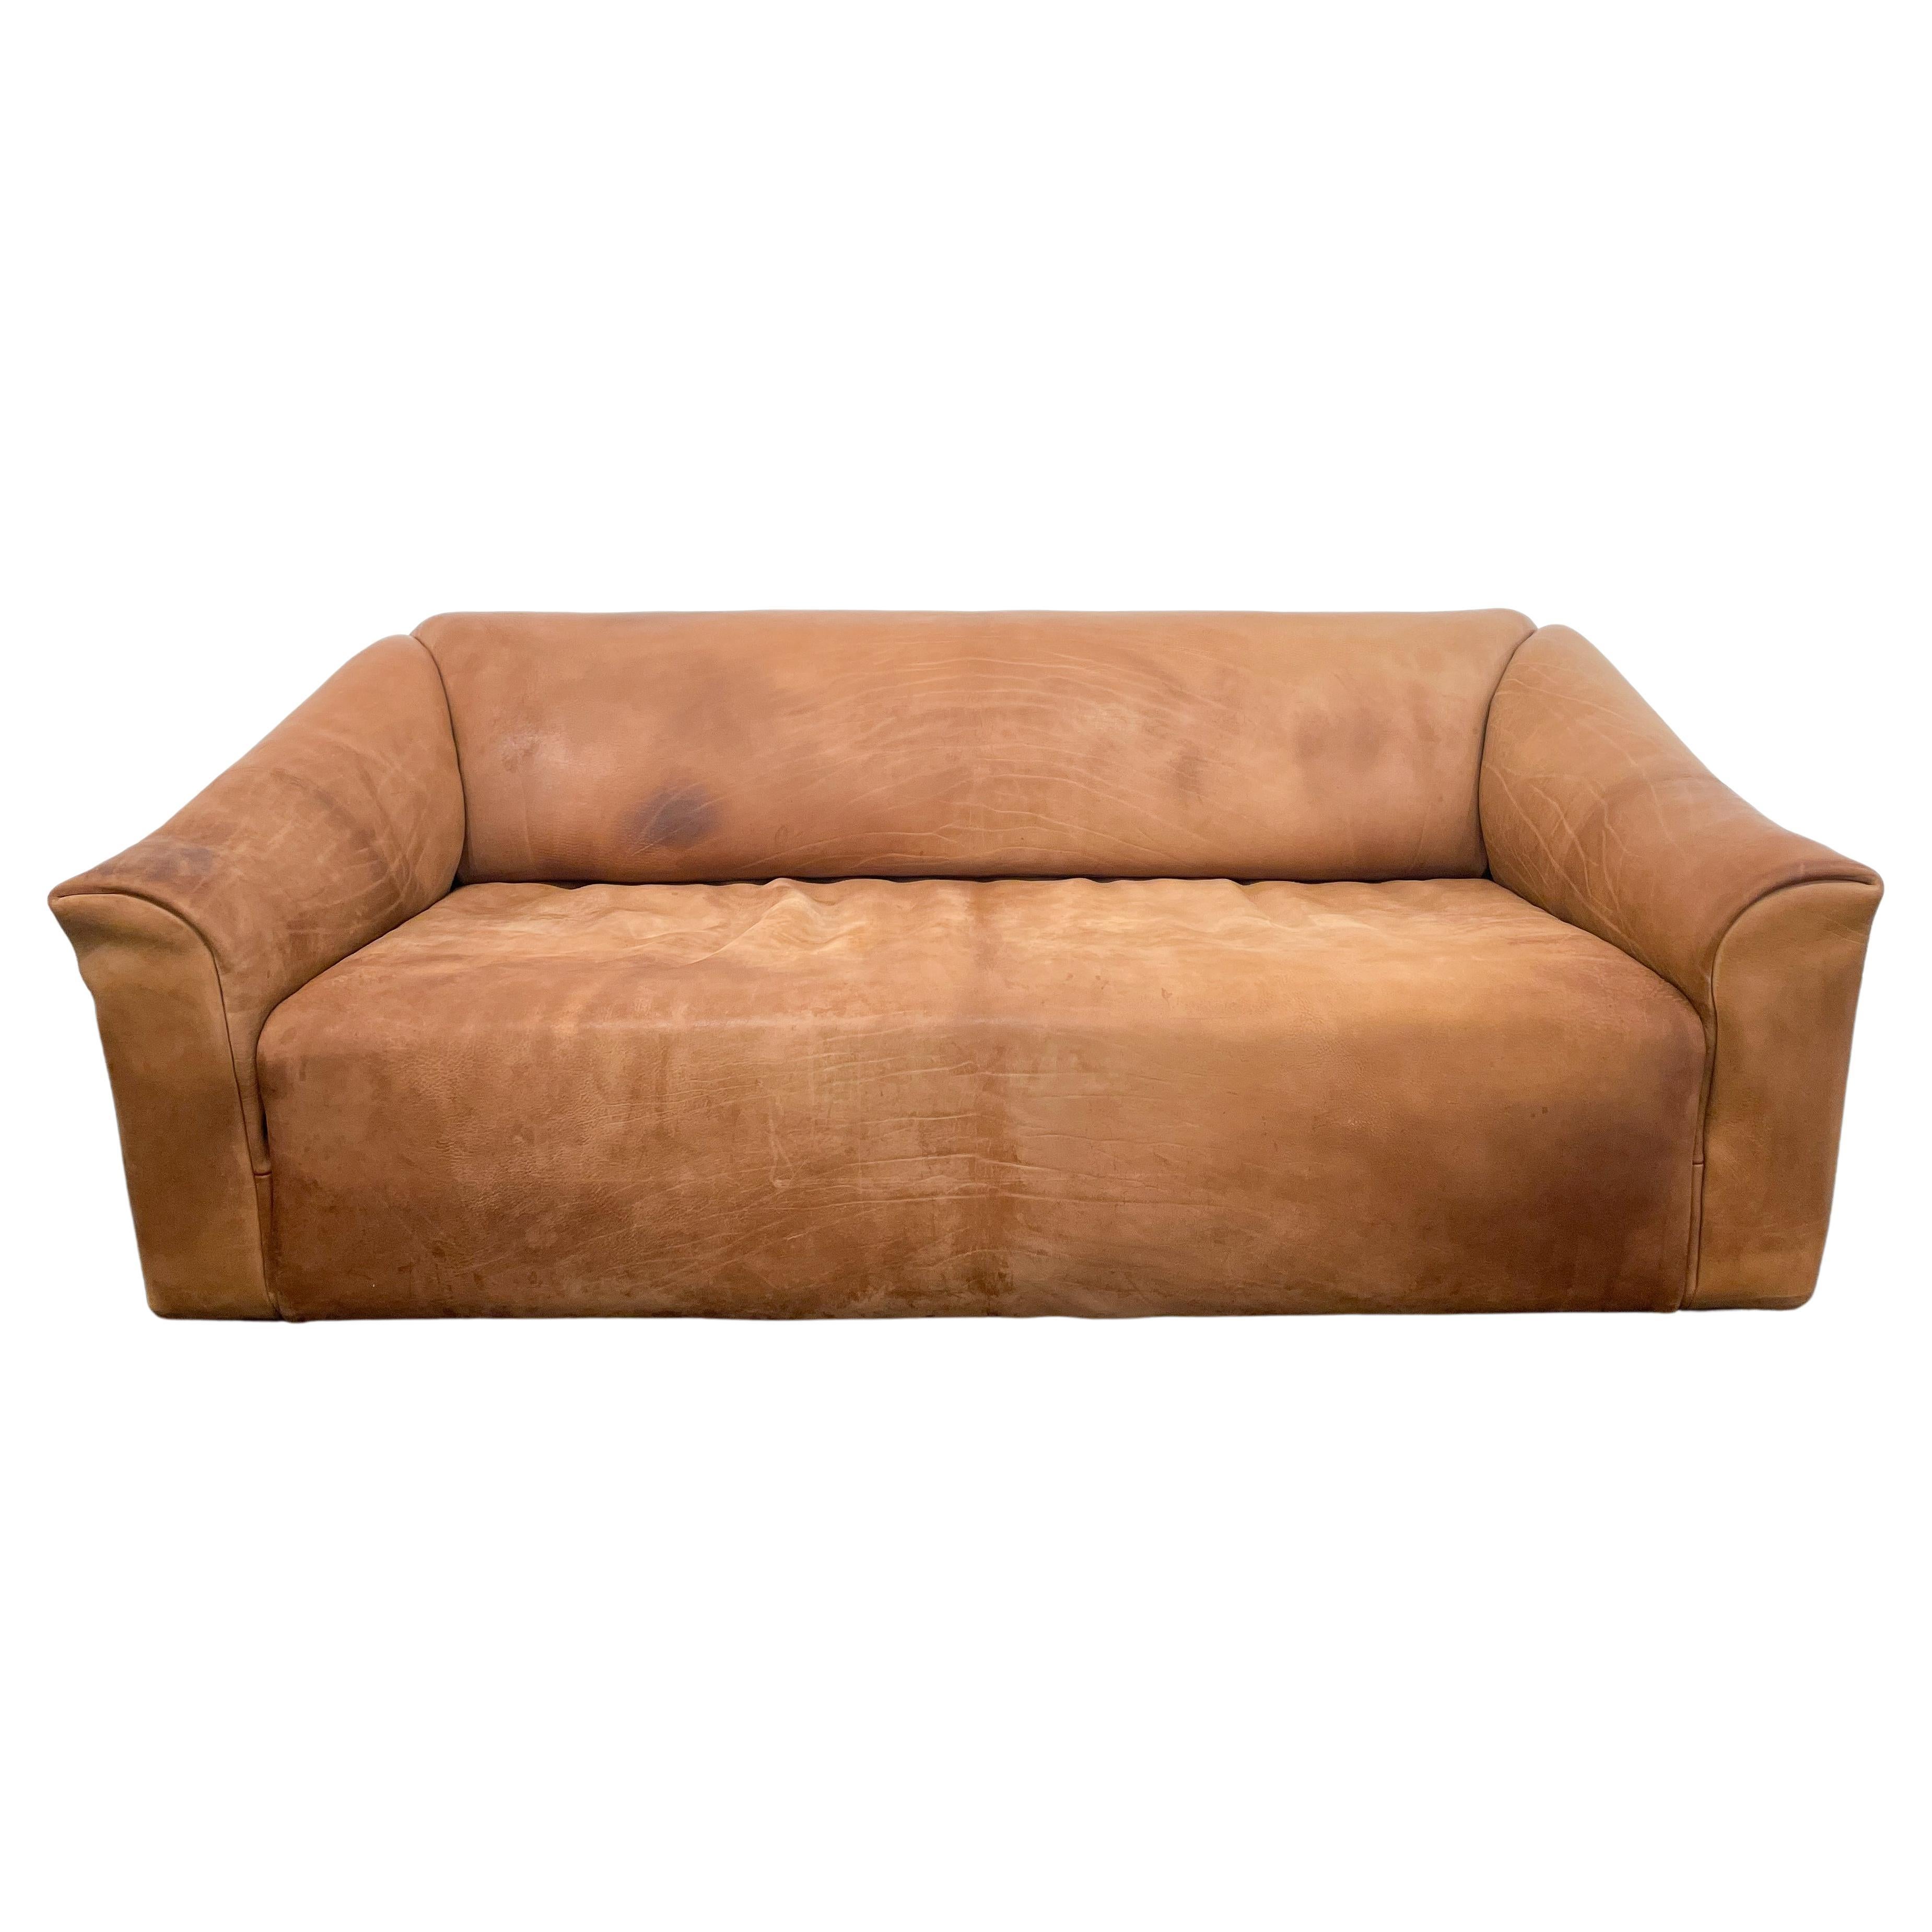 Brown Leather Sofa Model DS47 De Sede, Switzerland, 1970s